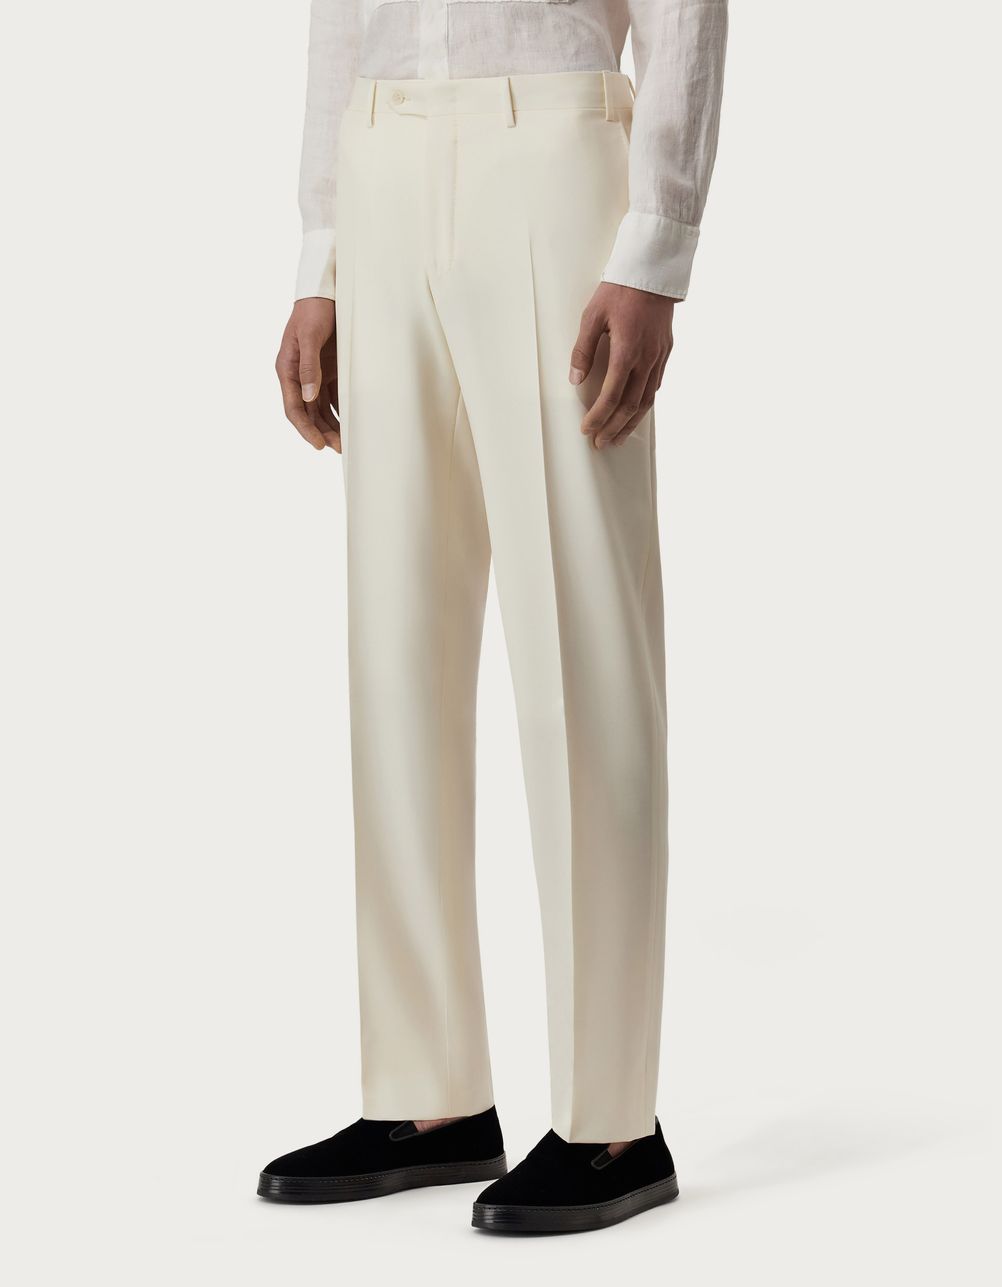 White pants in wool